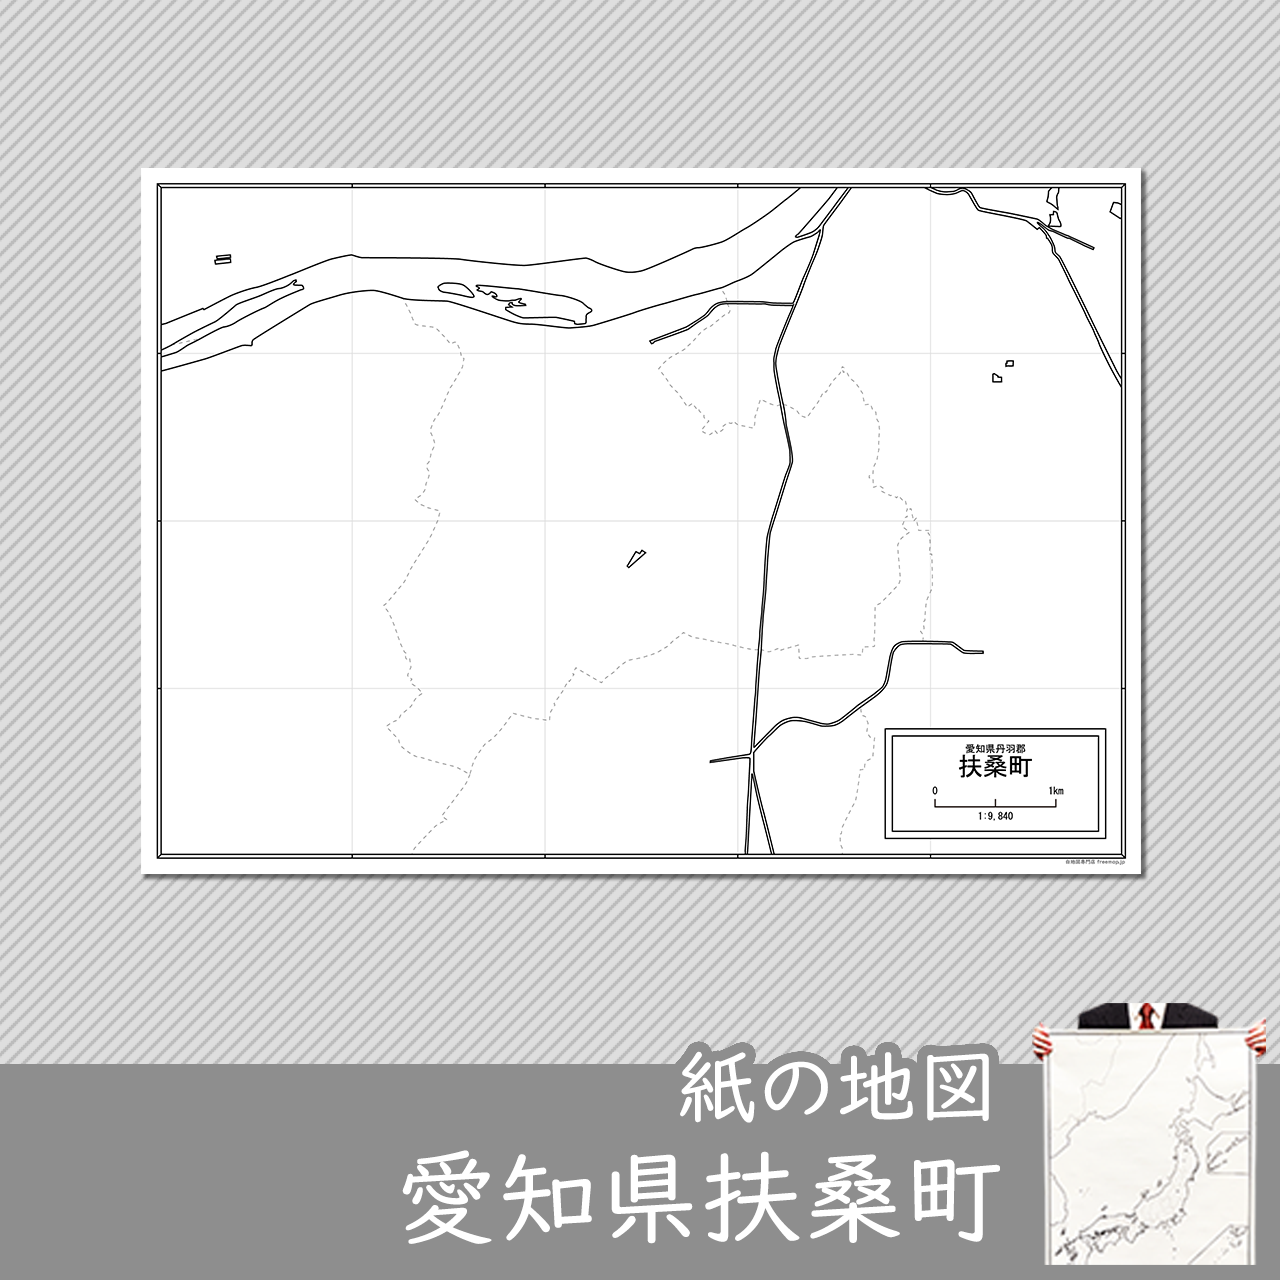 扶桑町の紙の白地図